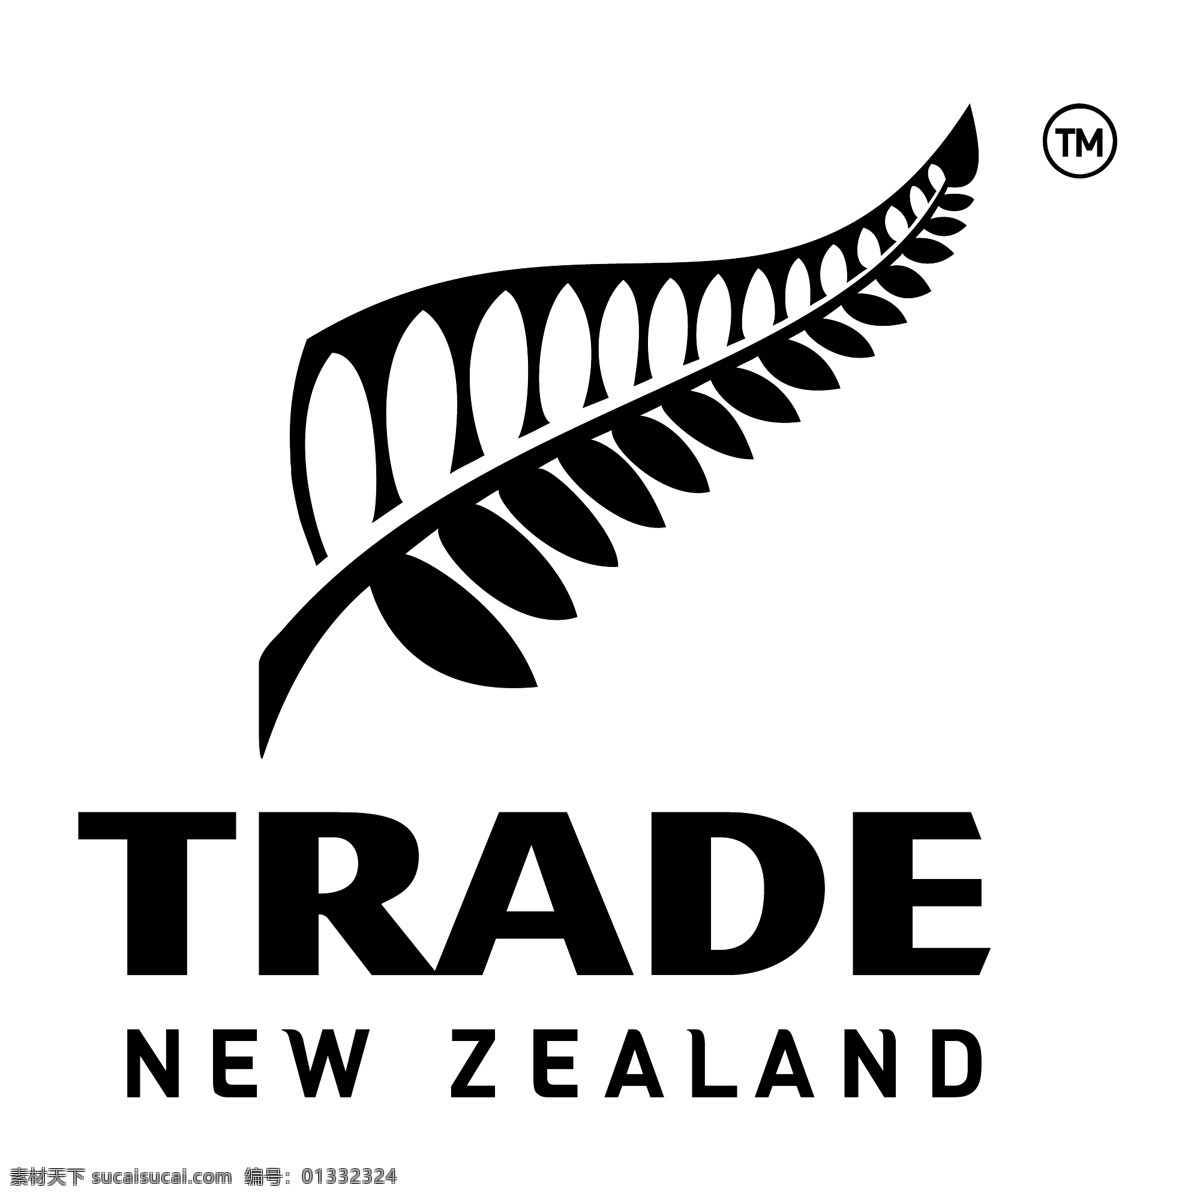 新西兰 贸易 自由 标识 psd源文件 logo设计